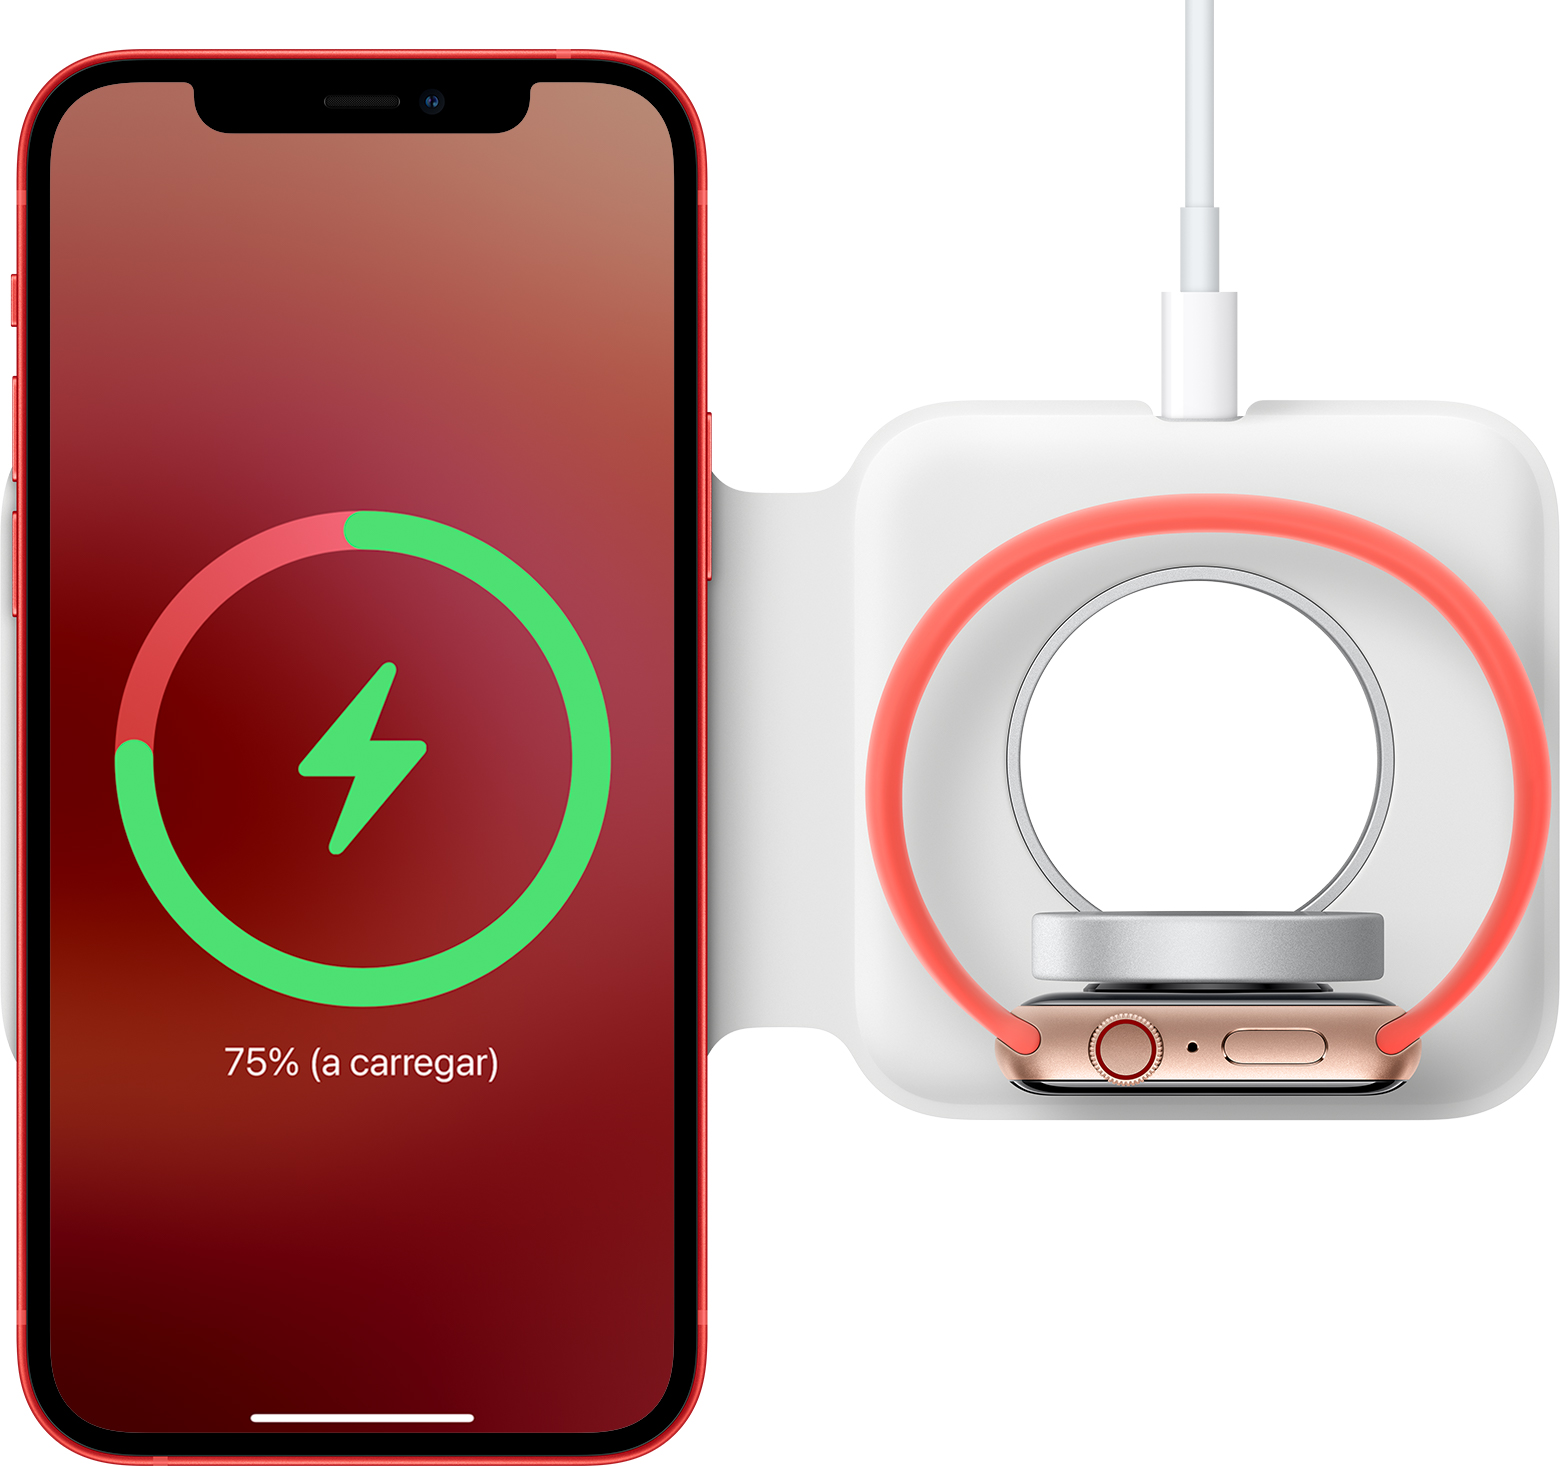 Como utilizar o carregador duplo MagSafe com iPhone e Apple Watch - Suporte  Apple (PT)